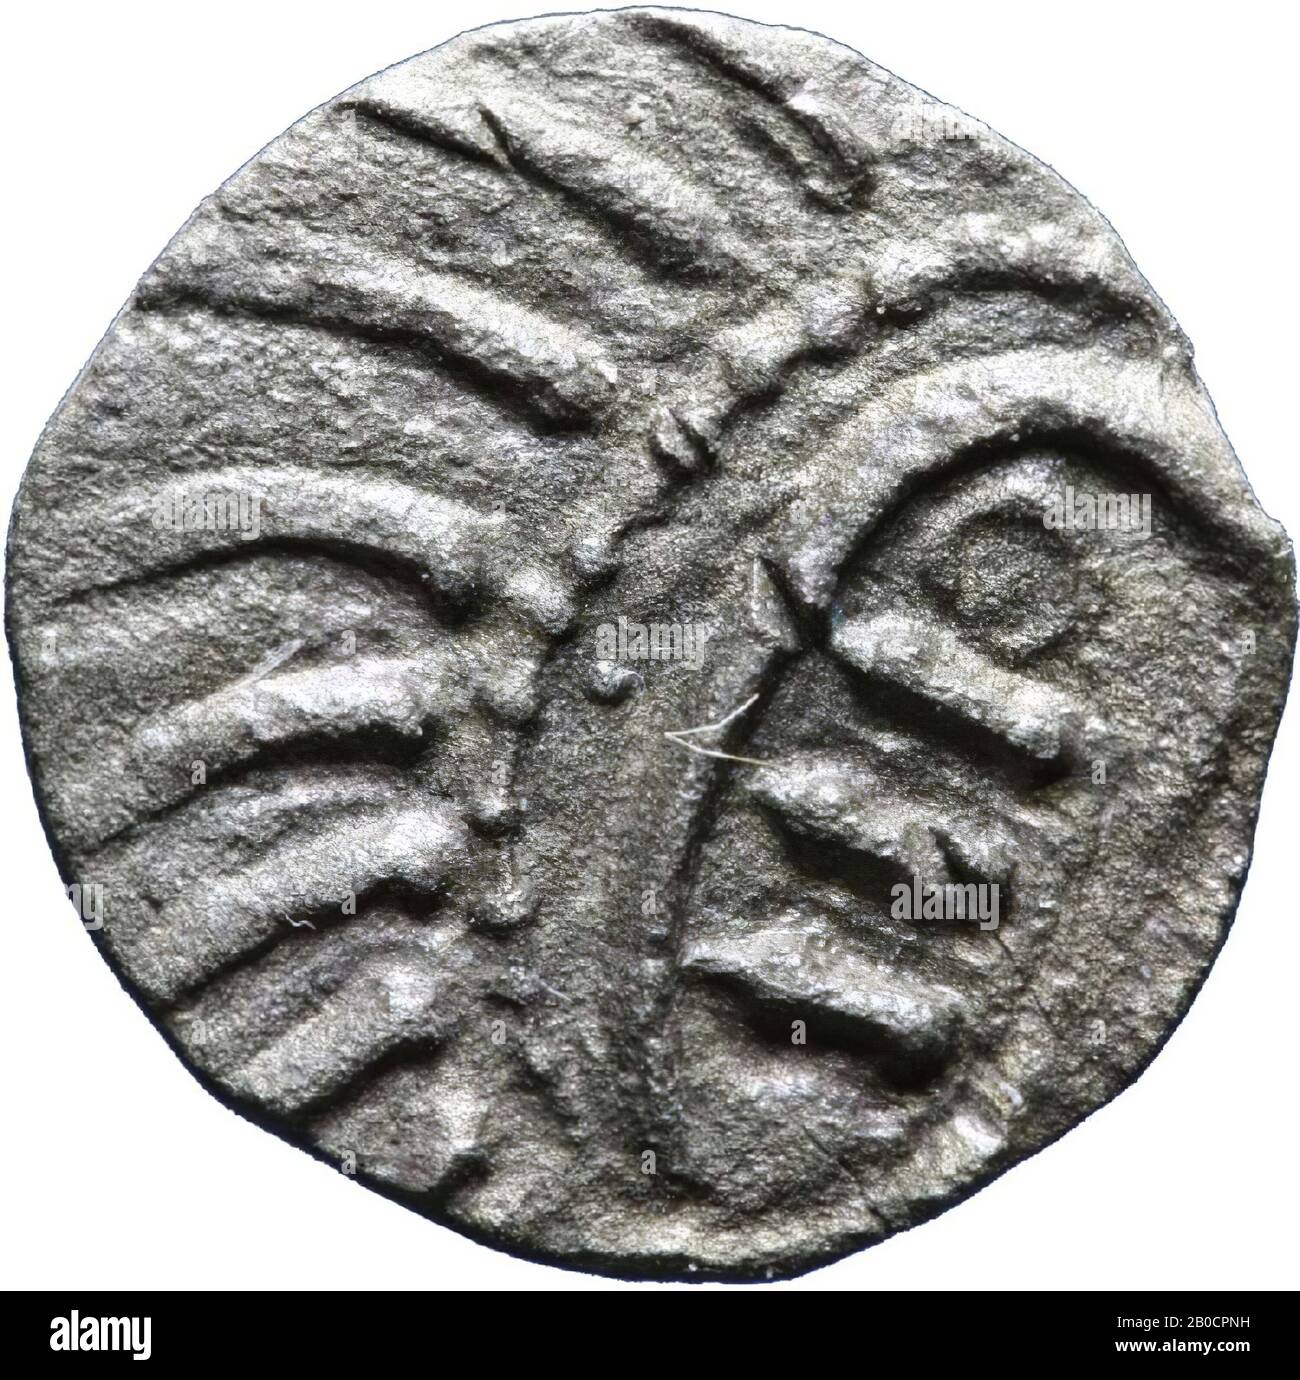 coin, sceatta, metal, silver, 0,693 g, Merovingian c. 700 after Chr., The Netherlands, Utrecht, Wijk bij Duurstede, Cothen, Caspergouw Stock Photo